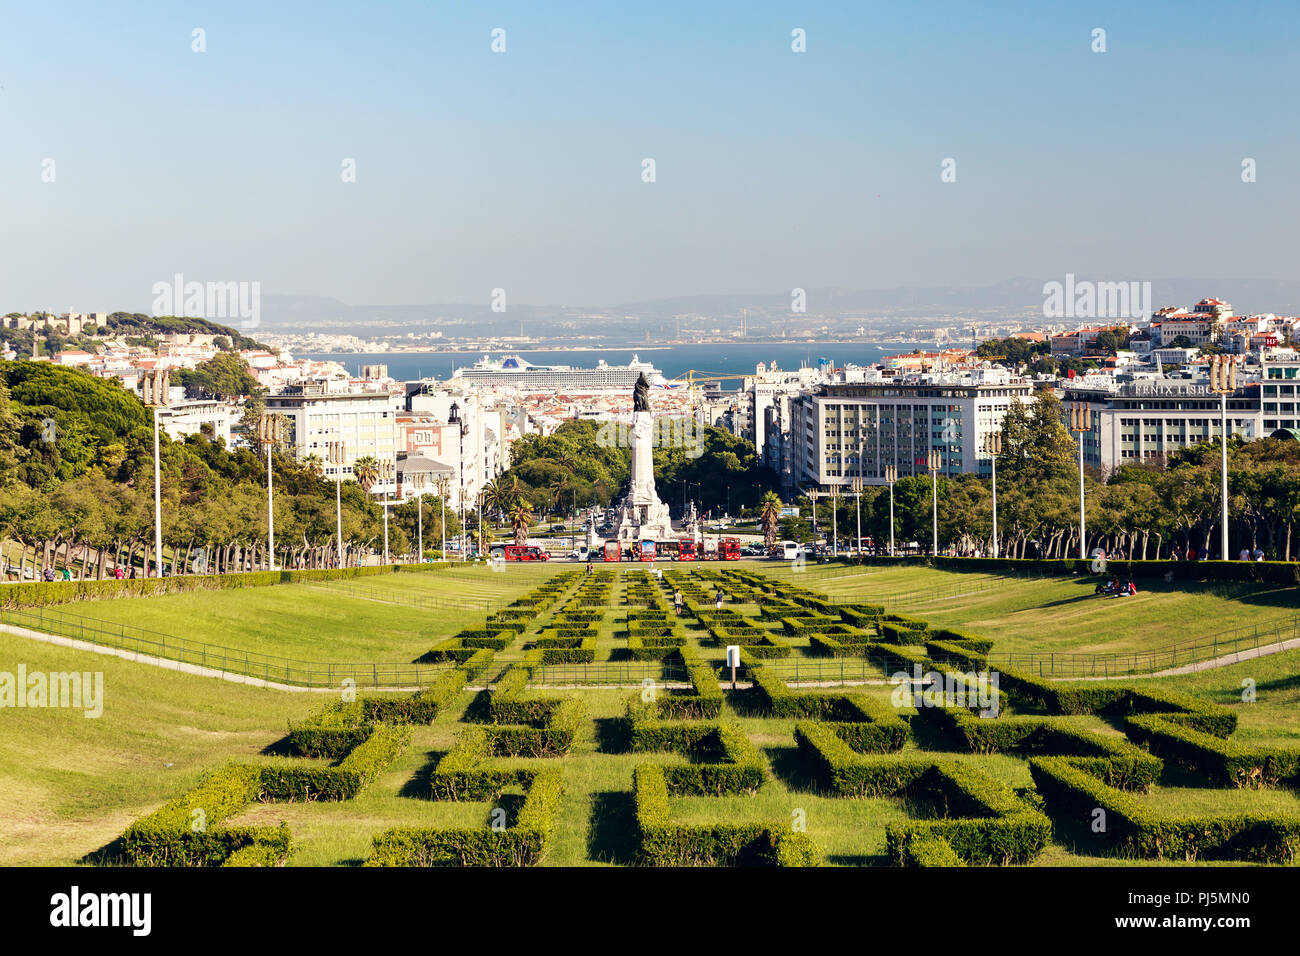 Labyrinth Lisbon - O que saber antes de ir (ATUALIZADO 2023)